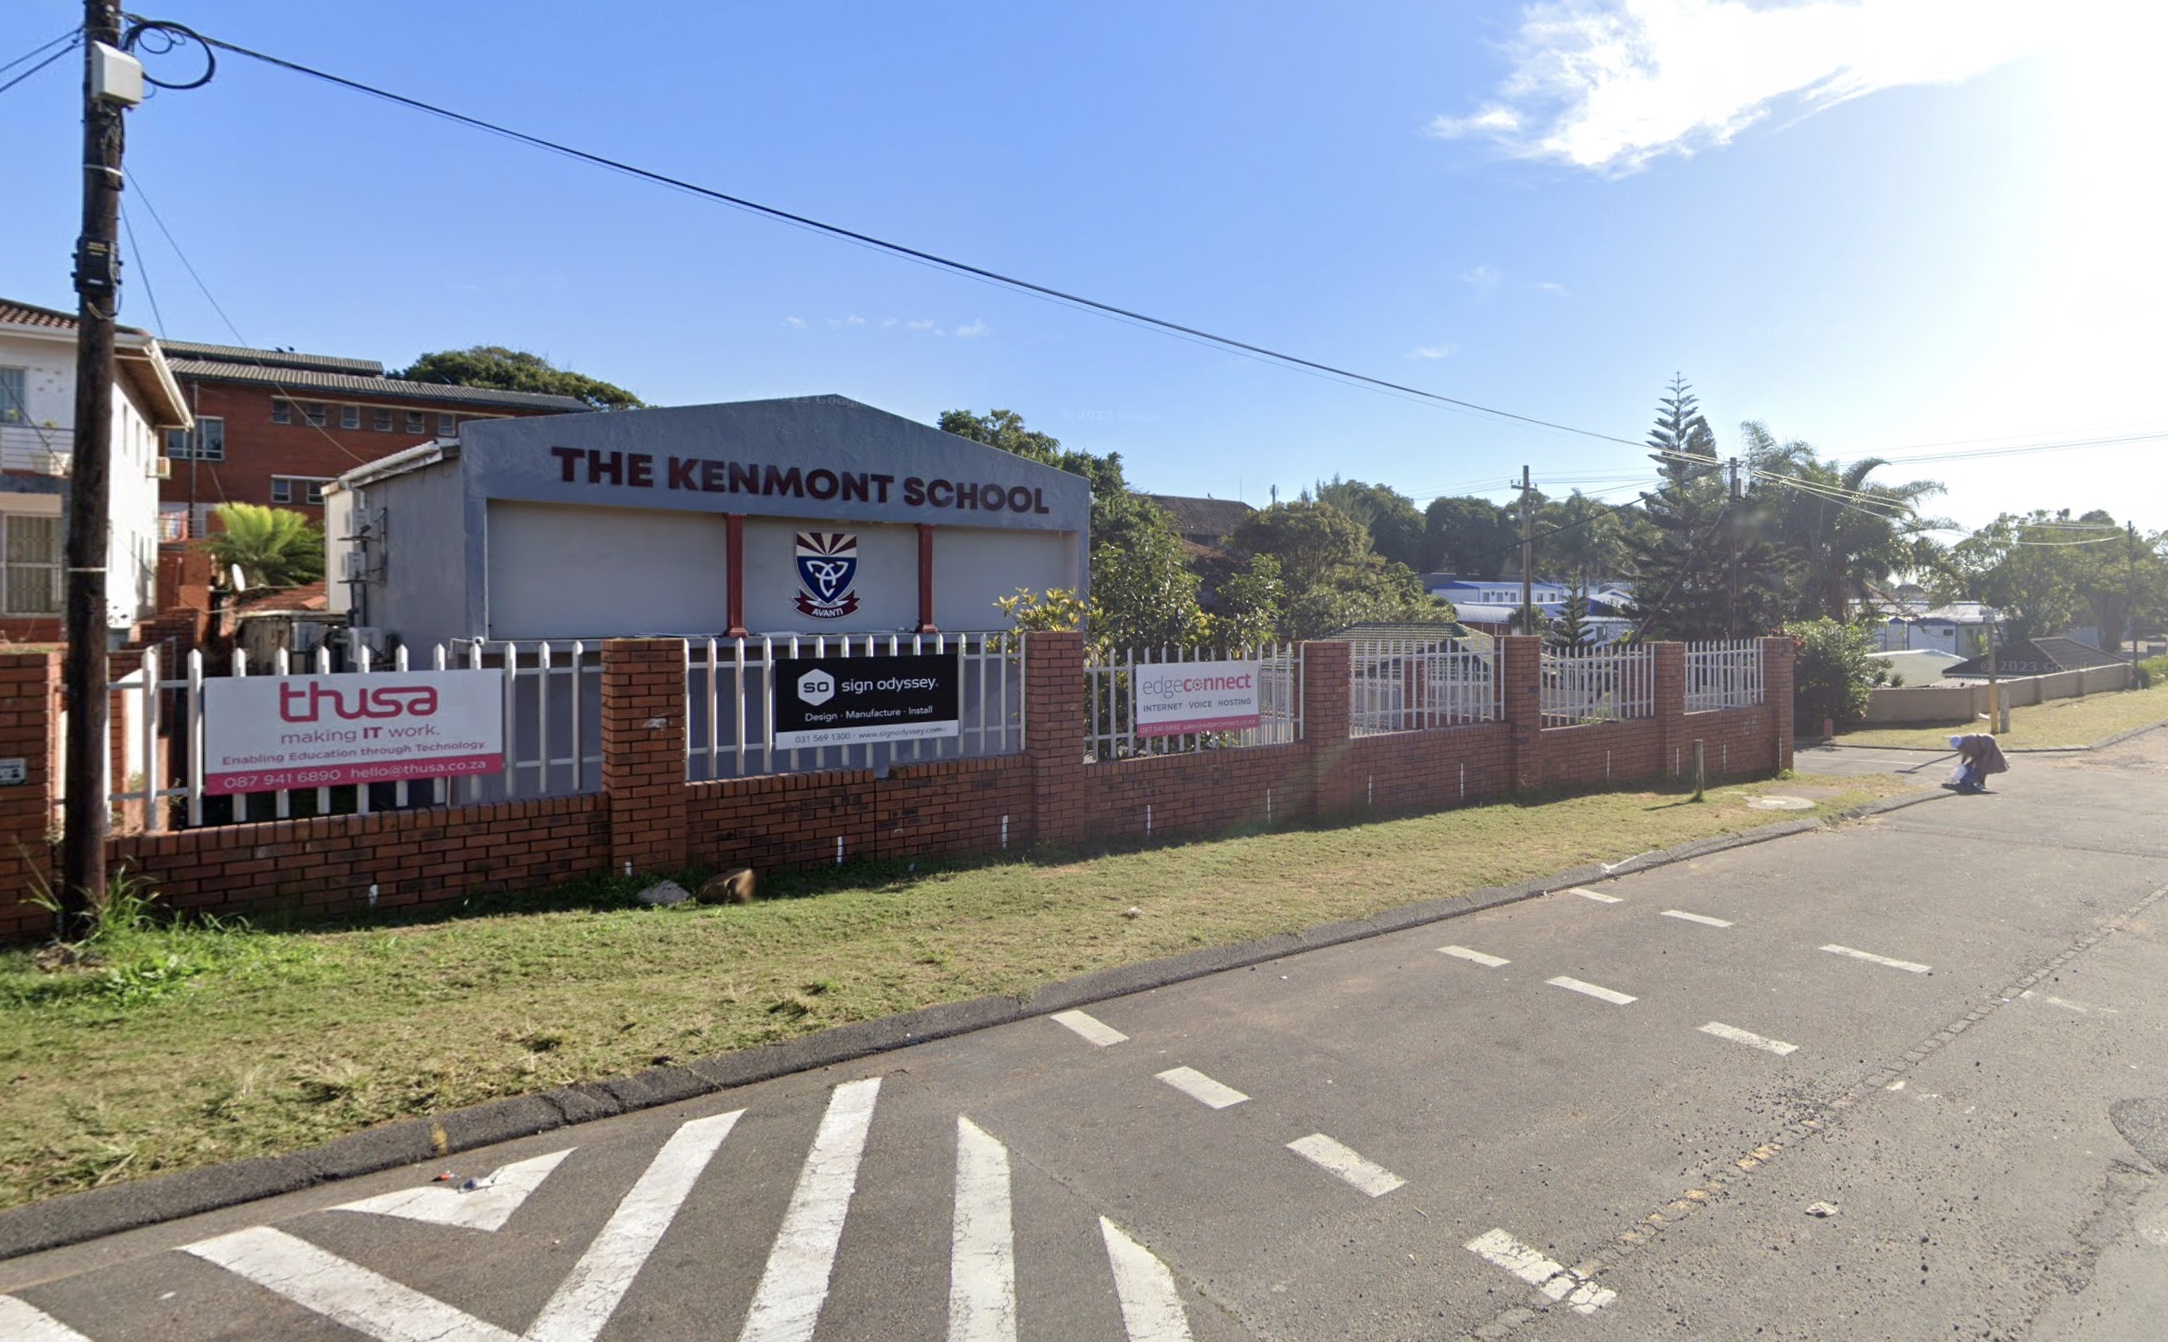 The Kenmont School